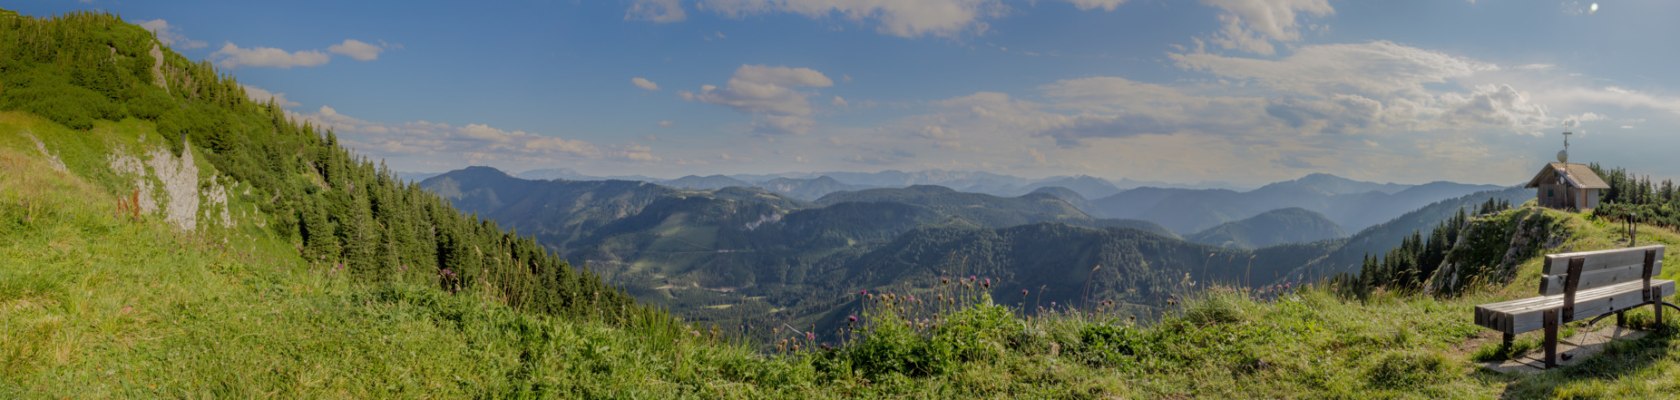 Bergsommer am Ötscher Panorama, © Ludwig Fahrnberger